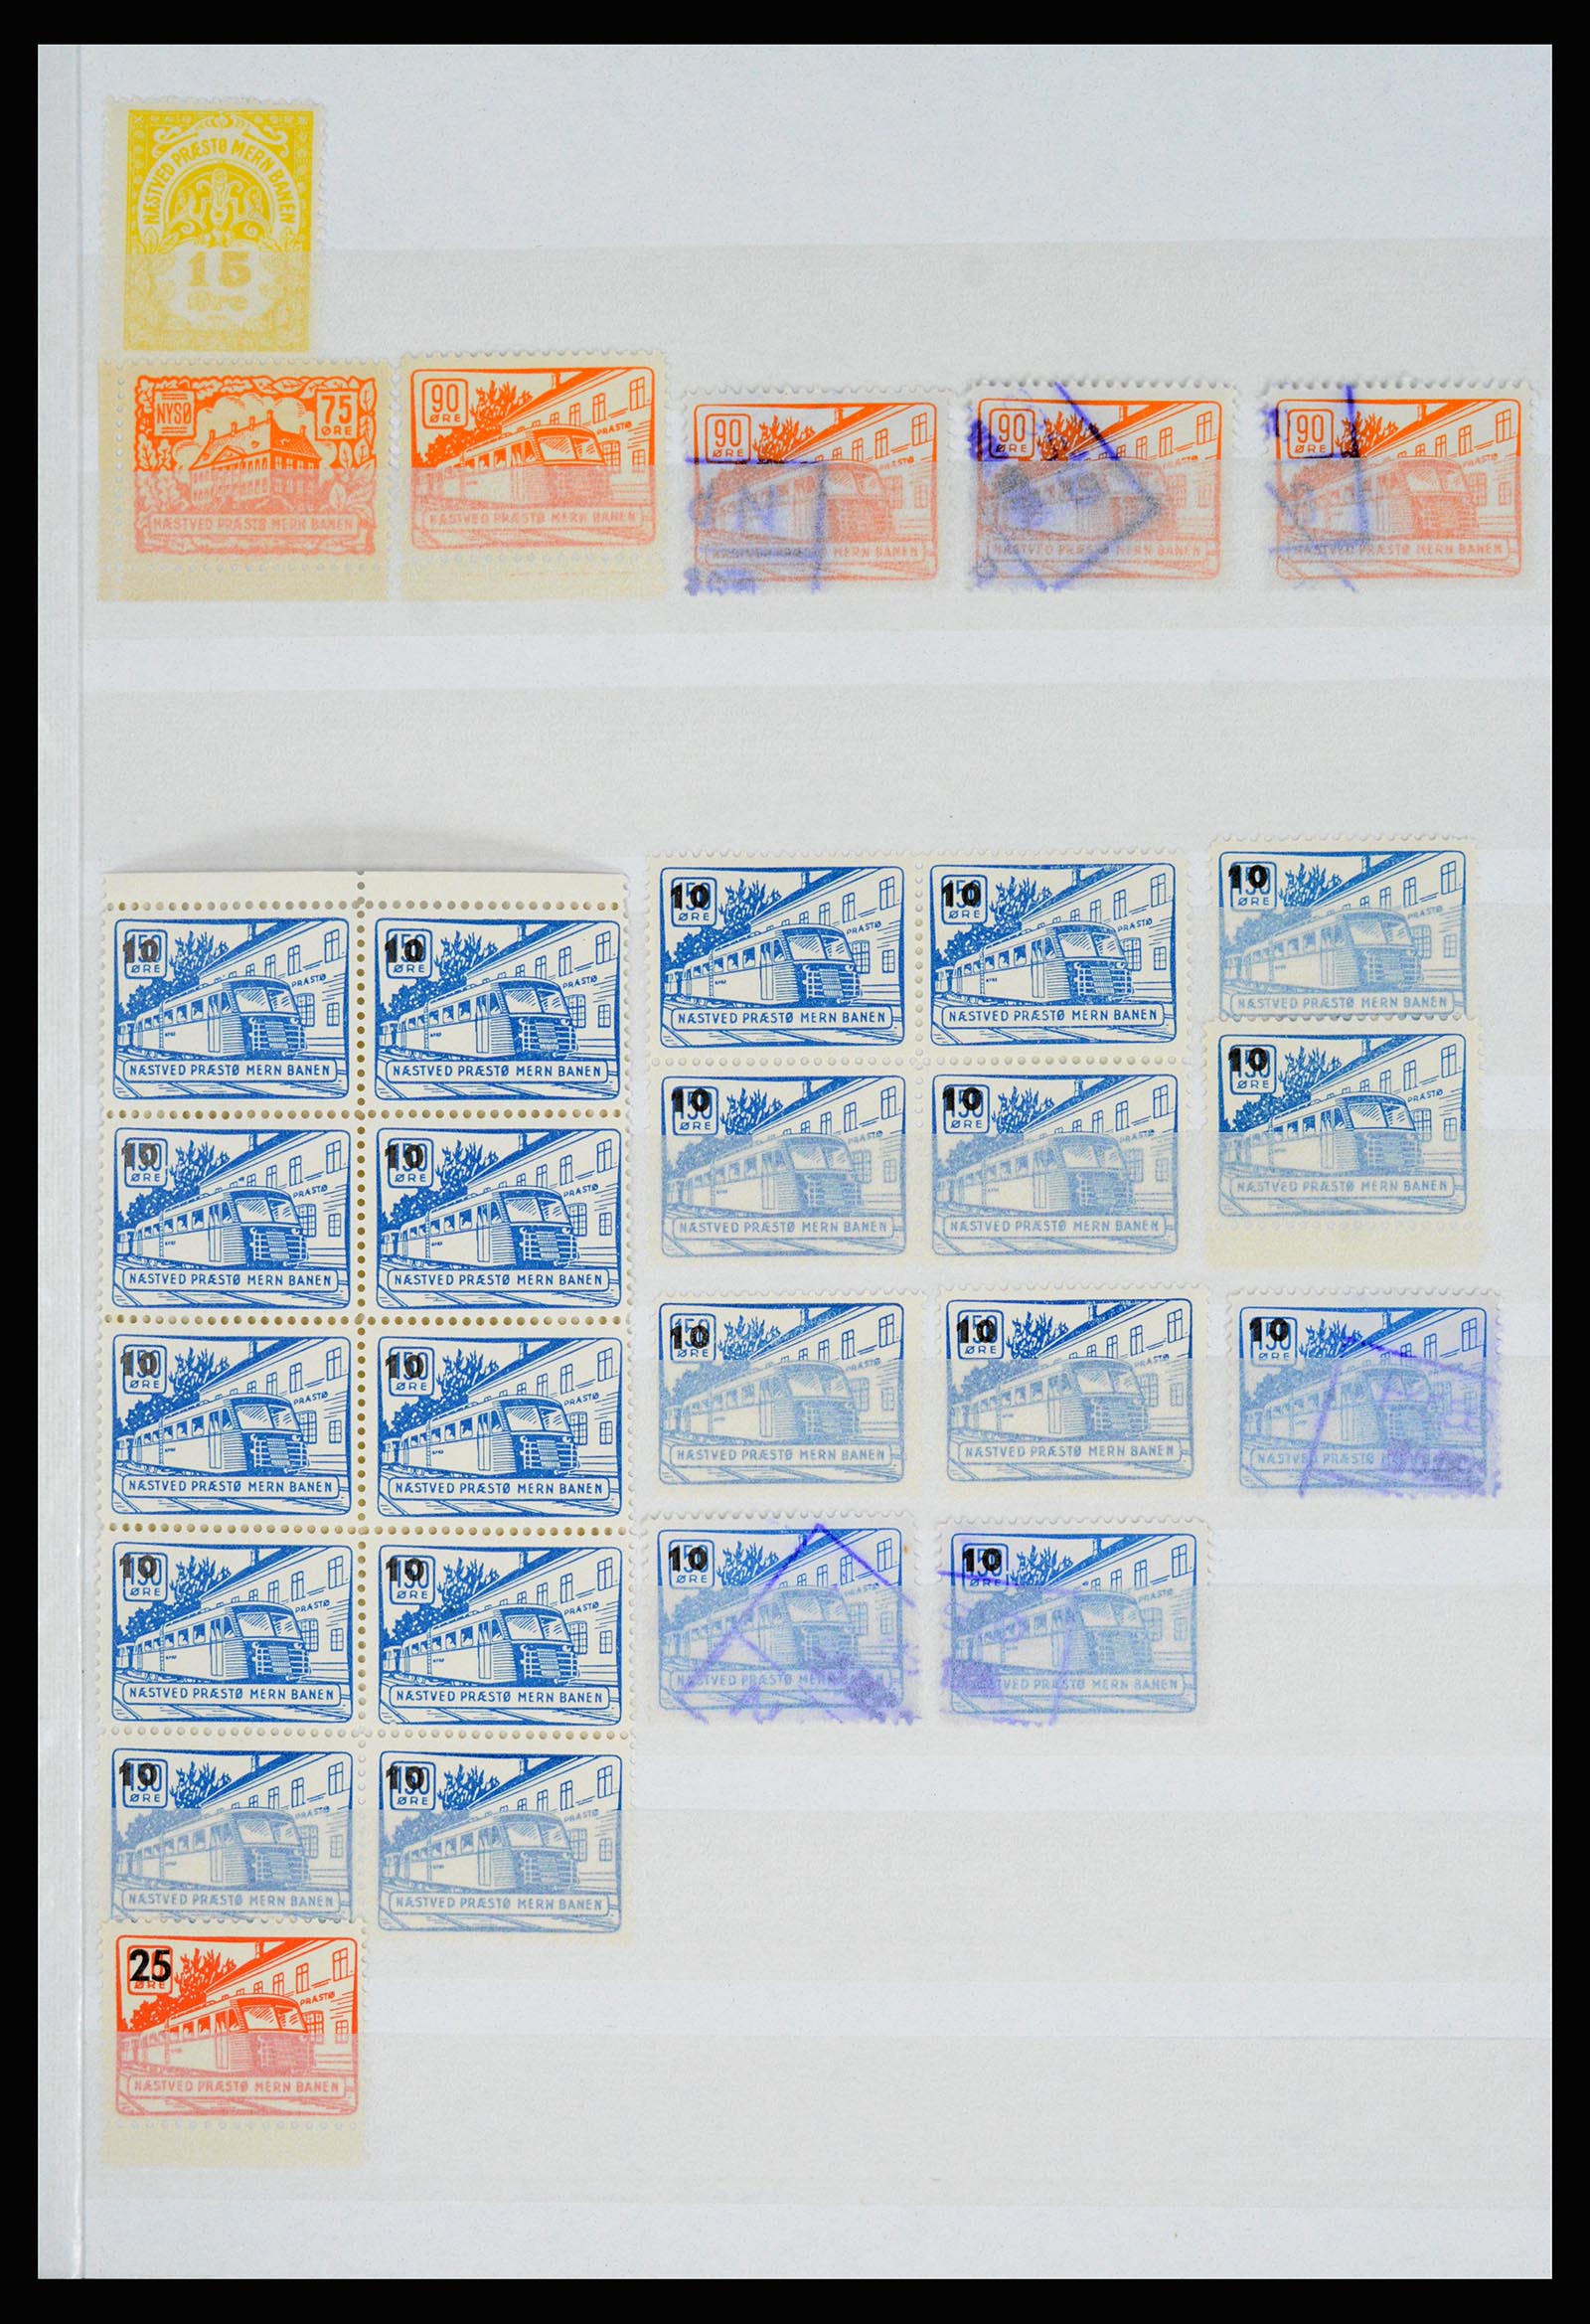 36982 090 - Postzegelverzameling 36982 Denemarken spoorwegzegels.